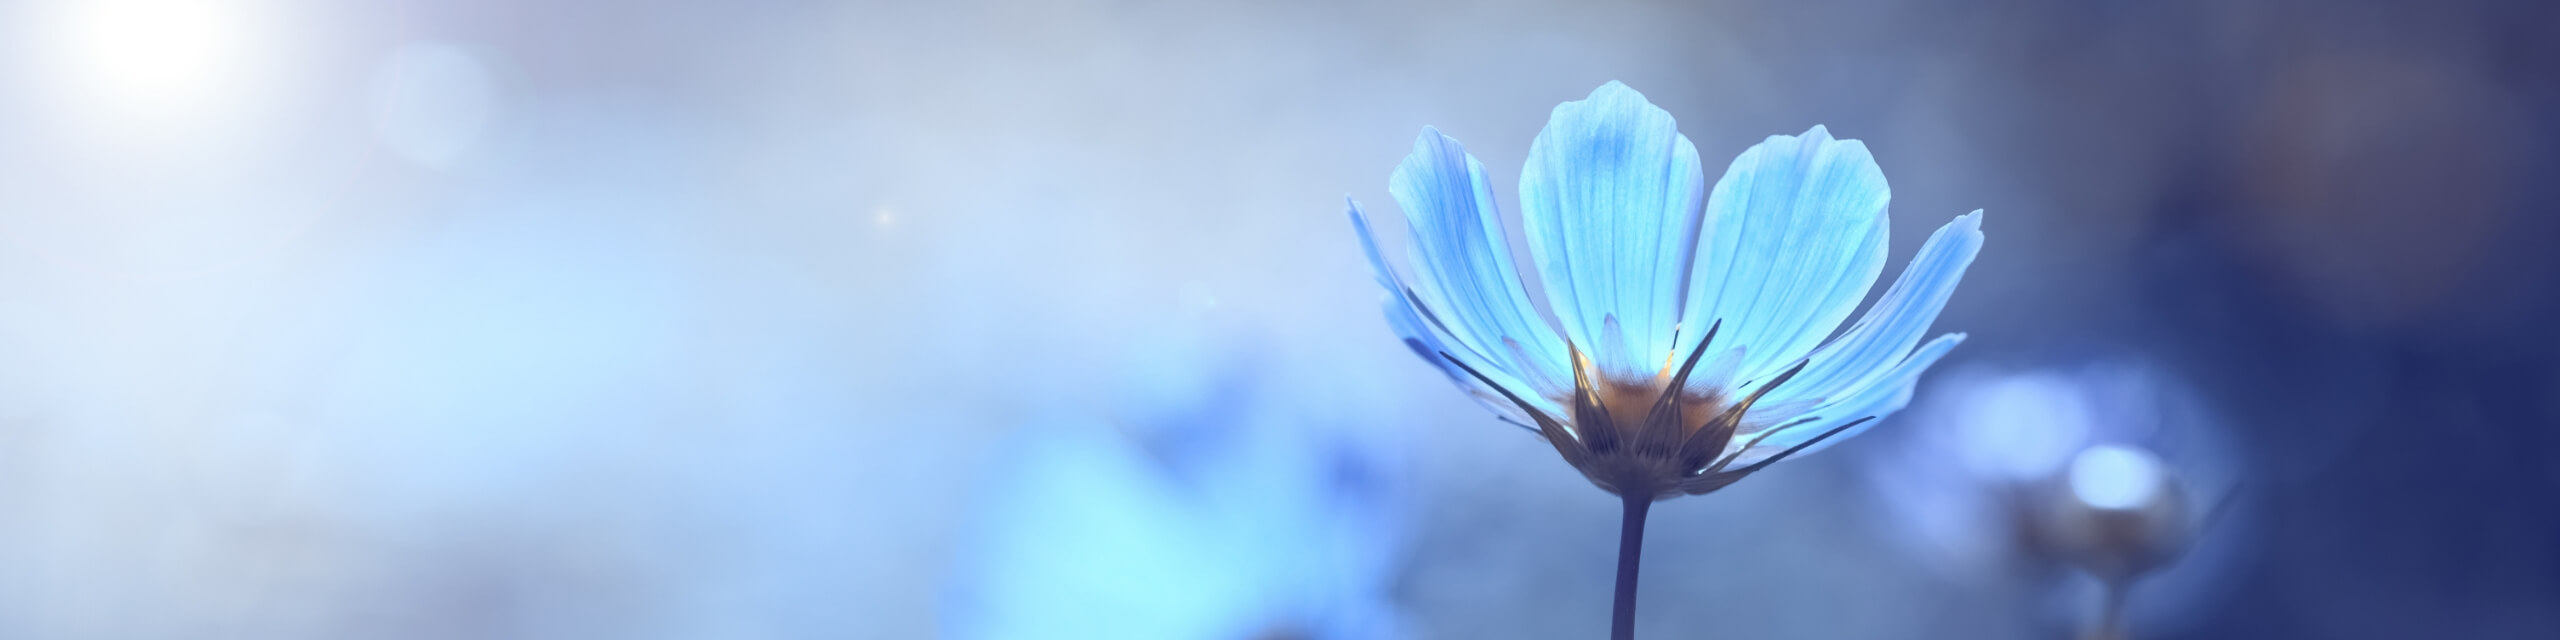 青色の綺麗な花